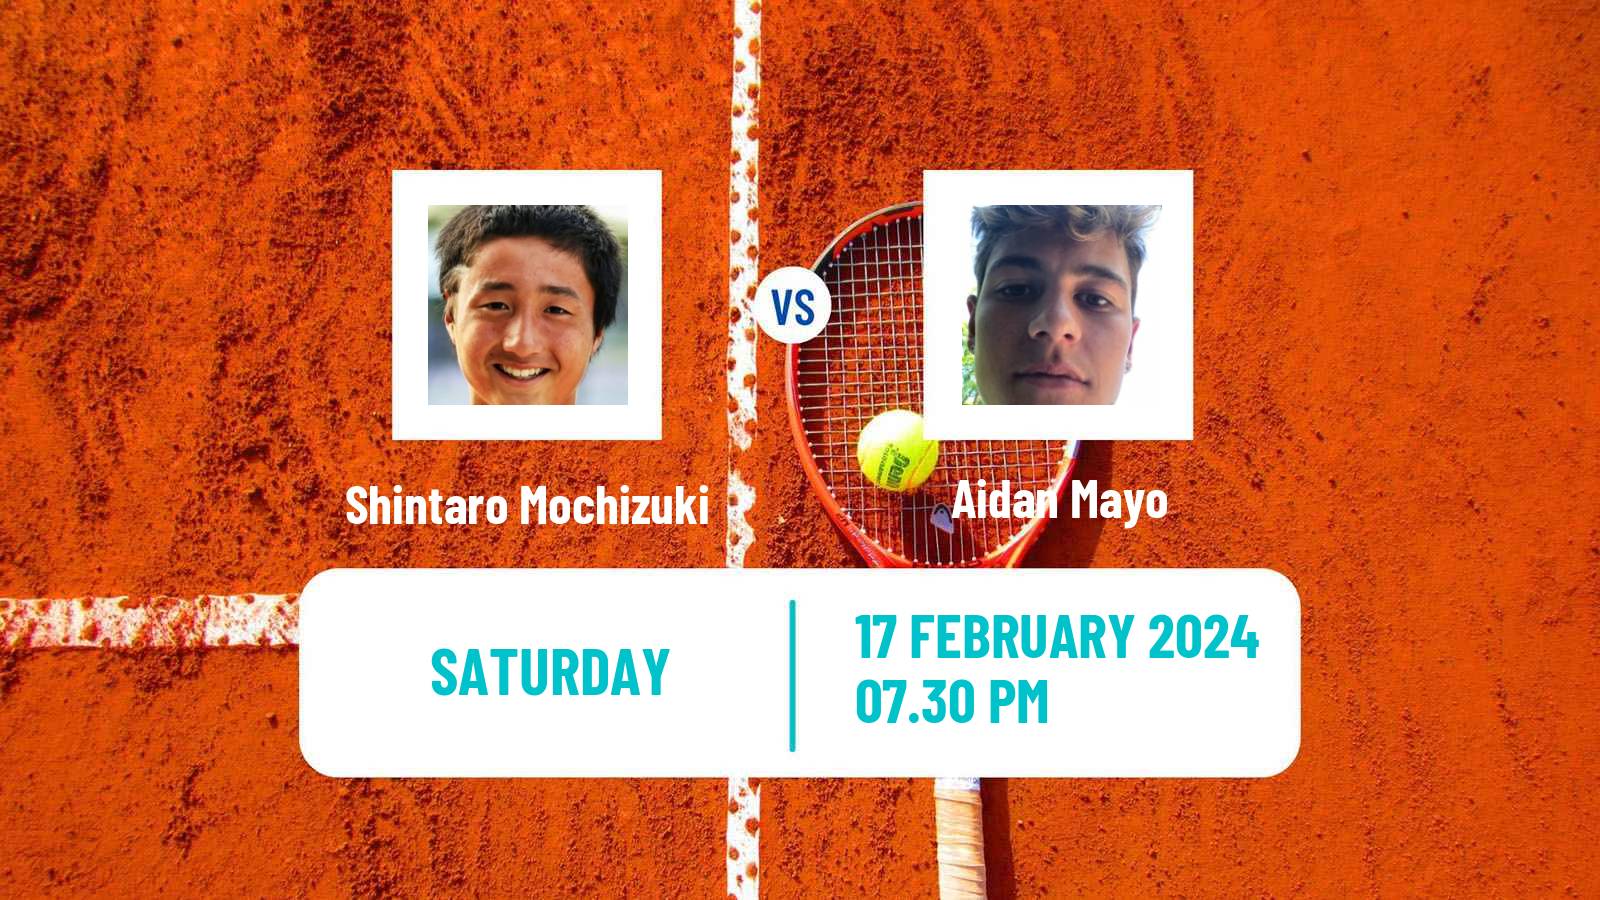 Tennis ATP Los Cabos Shintaro Mochizuki - Aidan Mayo